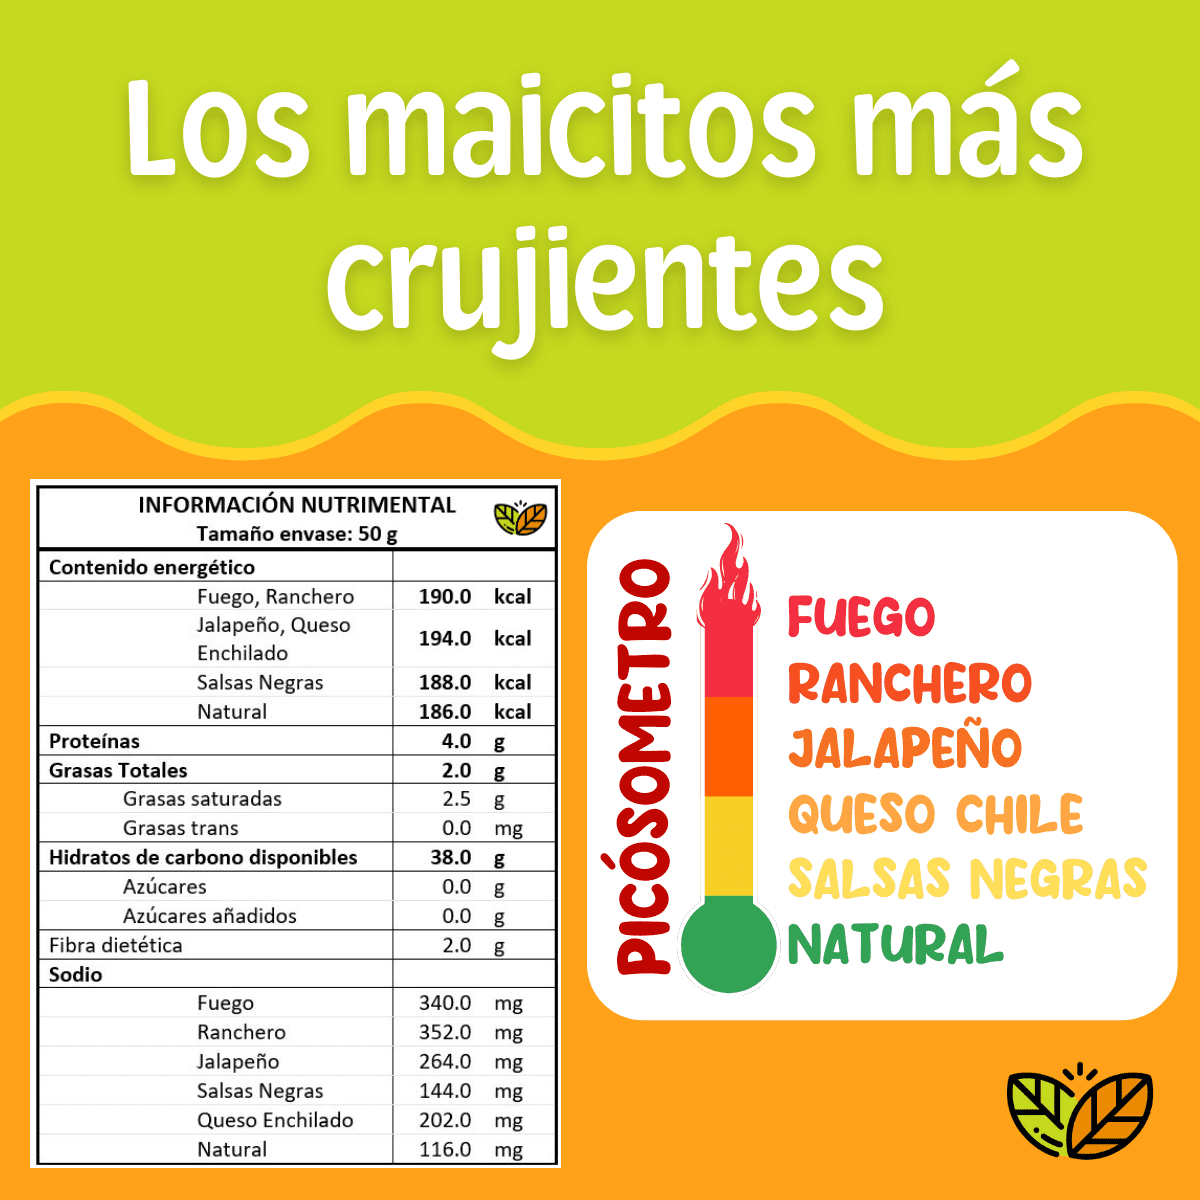 cantidad de calorias y tabla nutricional del maiz inflado marca blofis las botanas personalizables